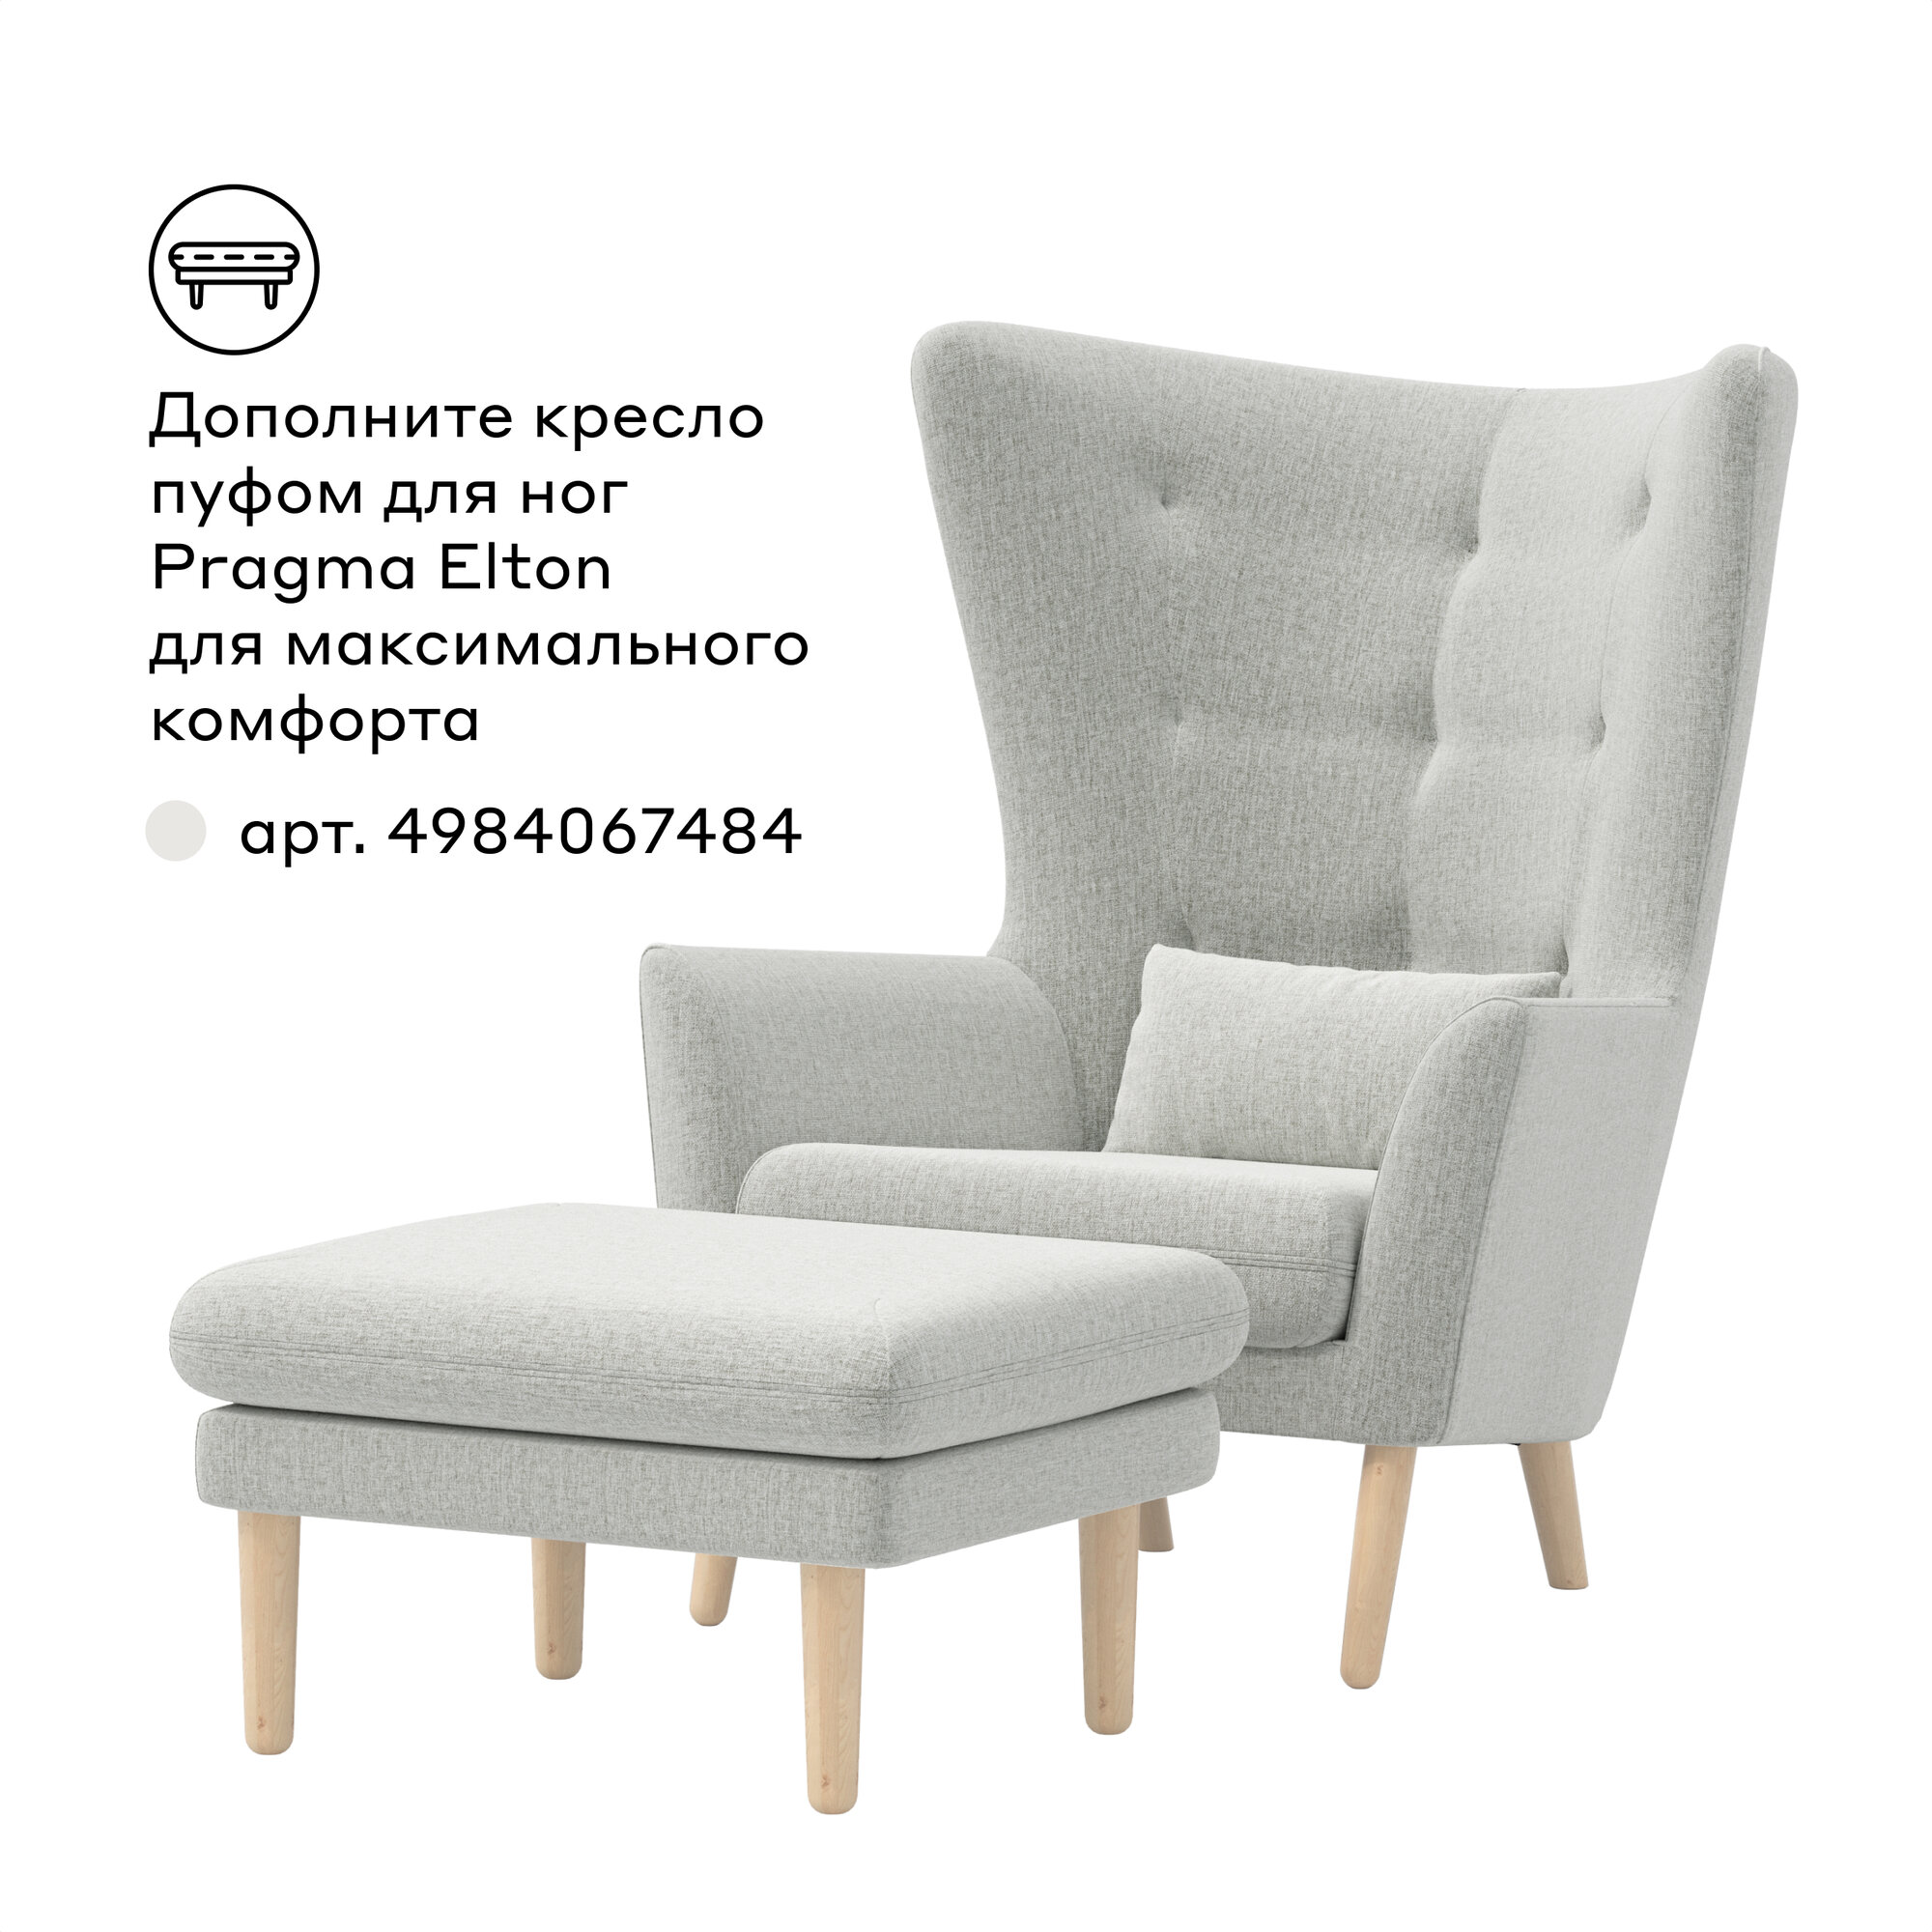 Кресло с декоративной подушкой Pragma Elton, обивка: текстиль, светло-серый